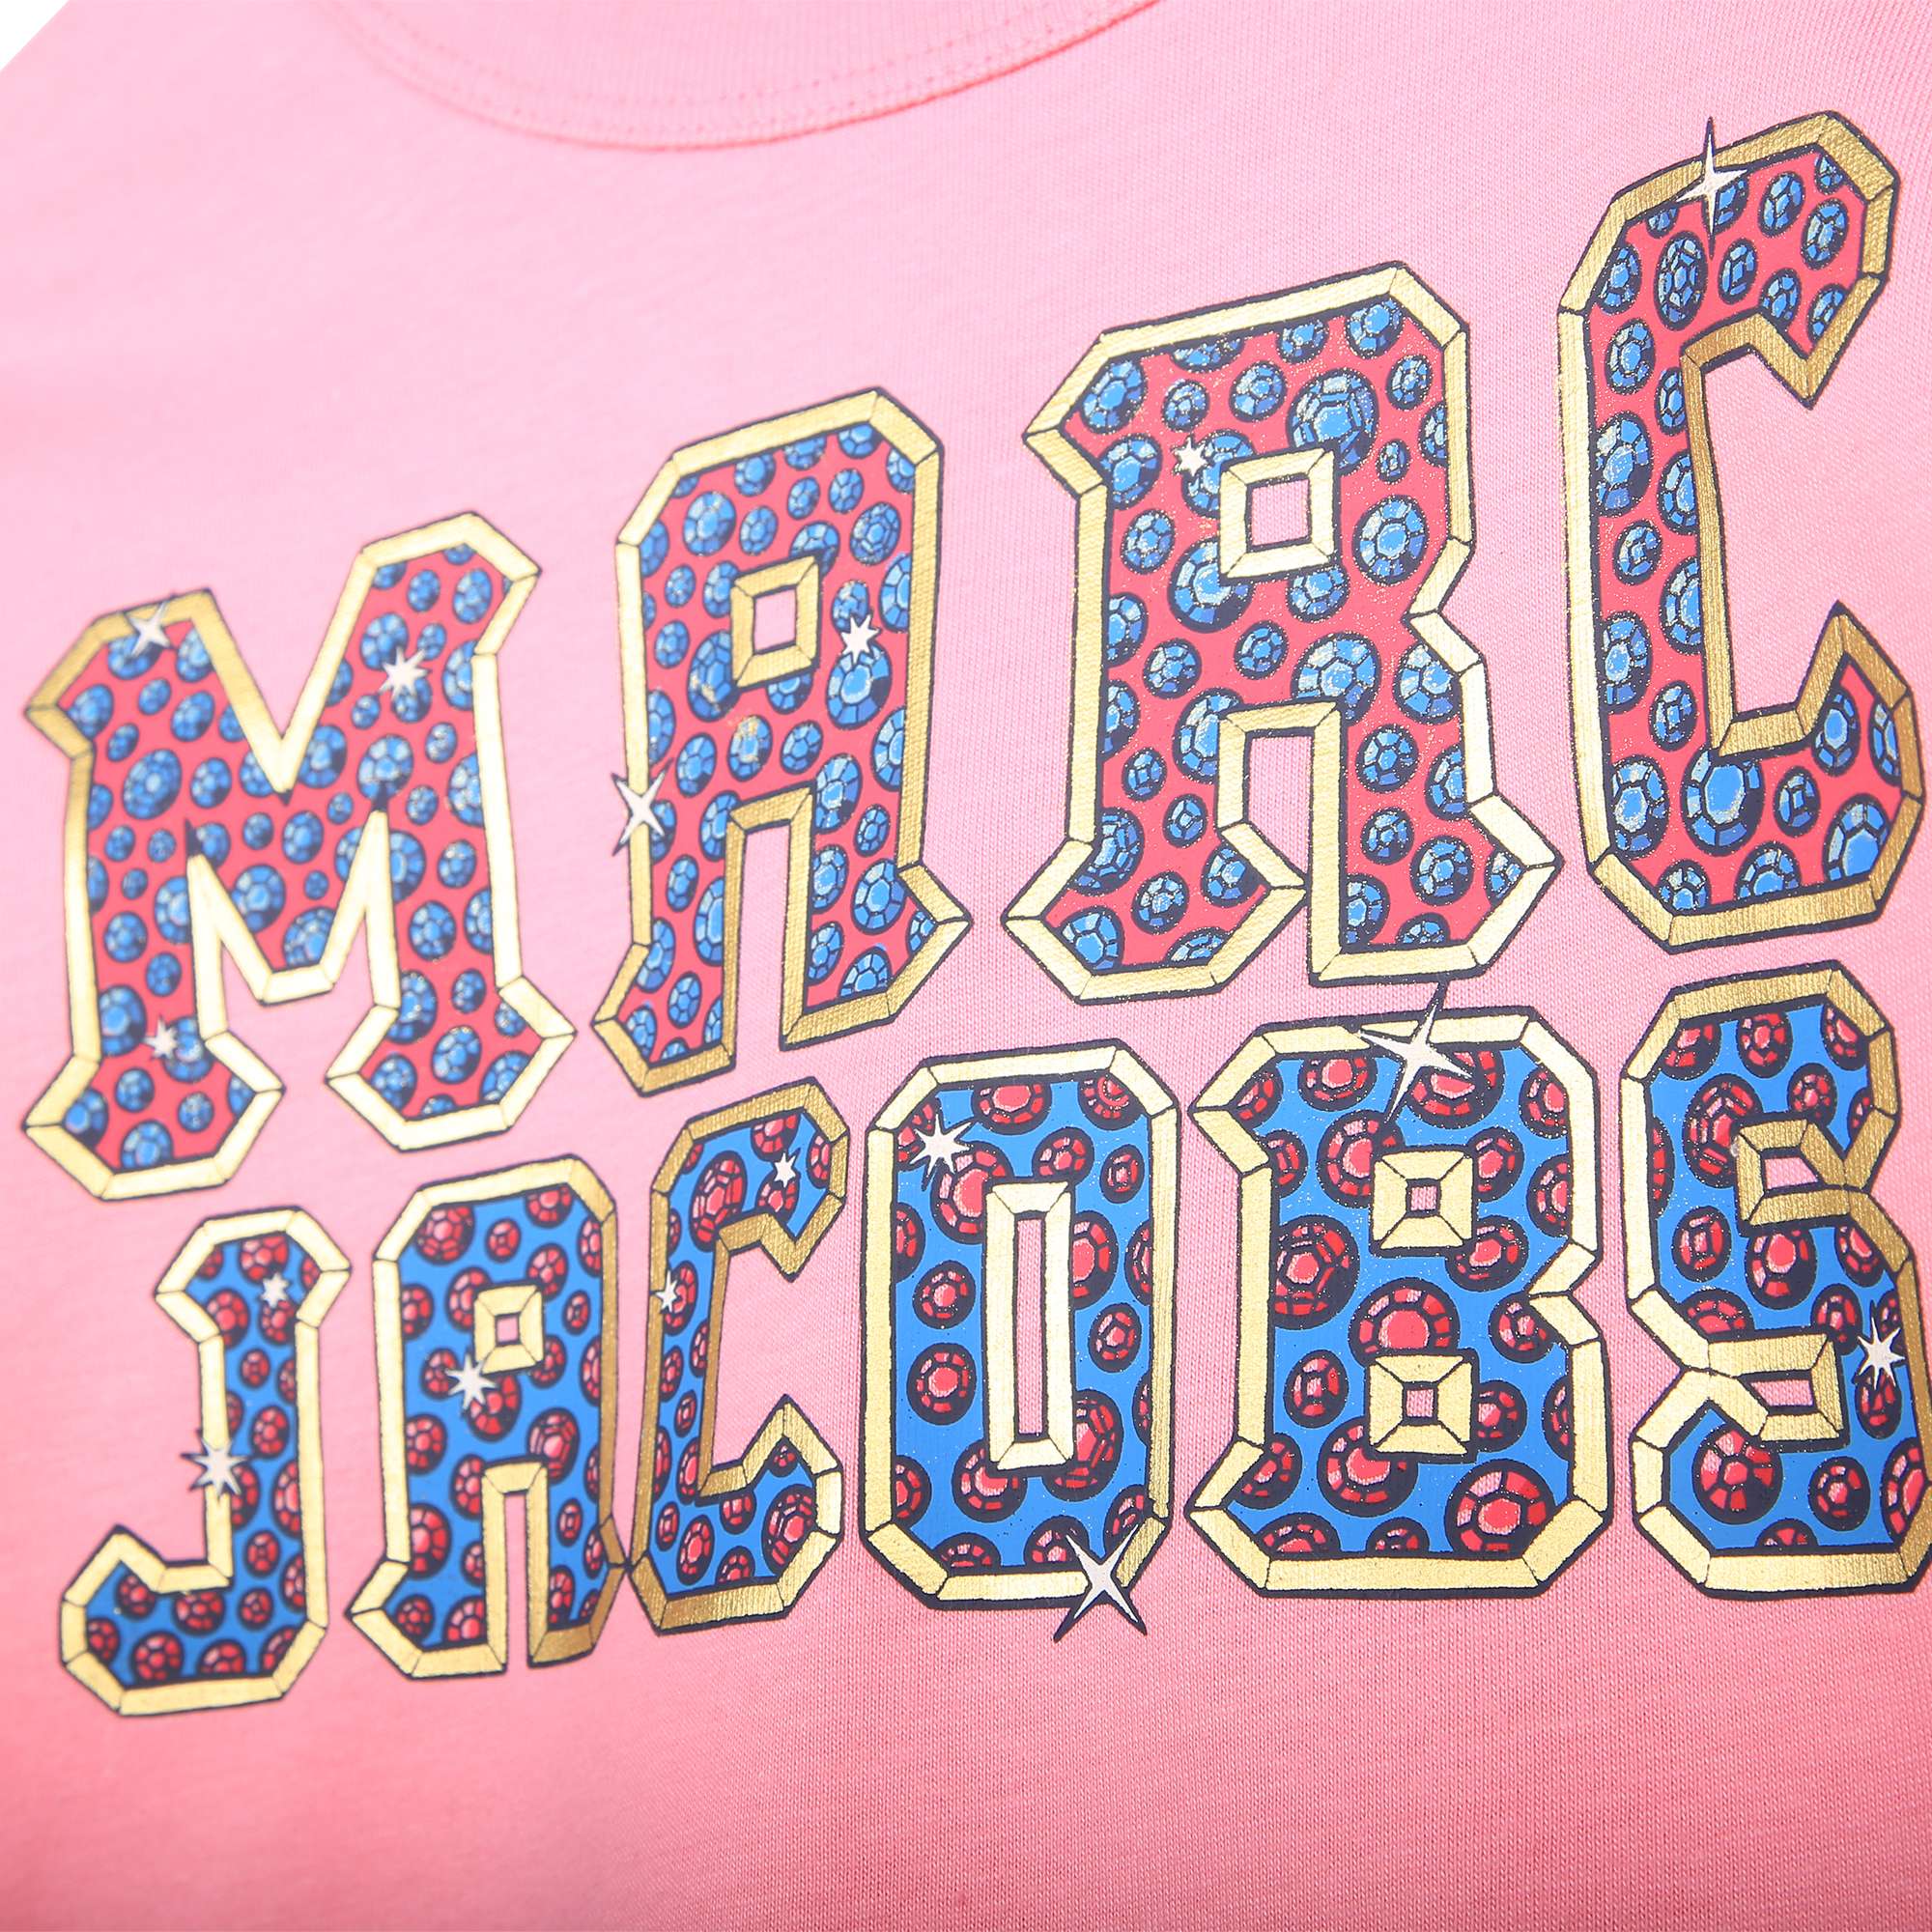 T-shirt met lange mouwen MARC JACOBS Voor